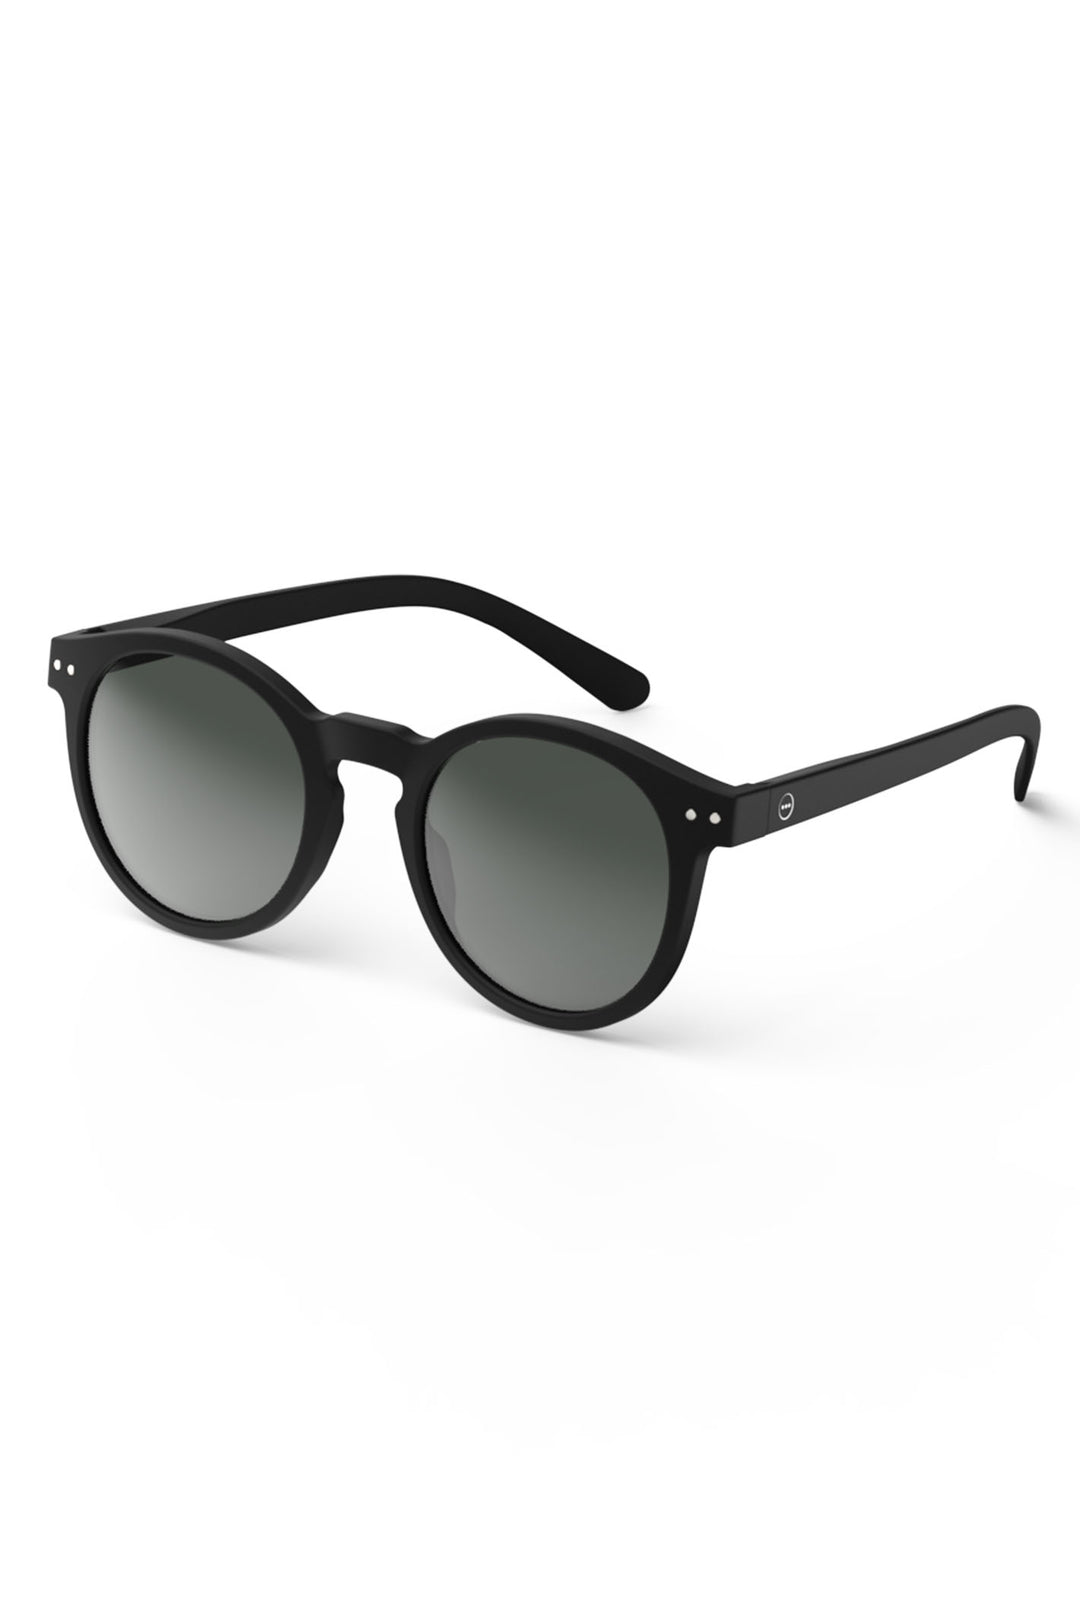 Izipizi Paris SLMSMC01 Black Sunglasses - Olivia Grace Fashion